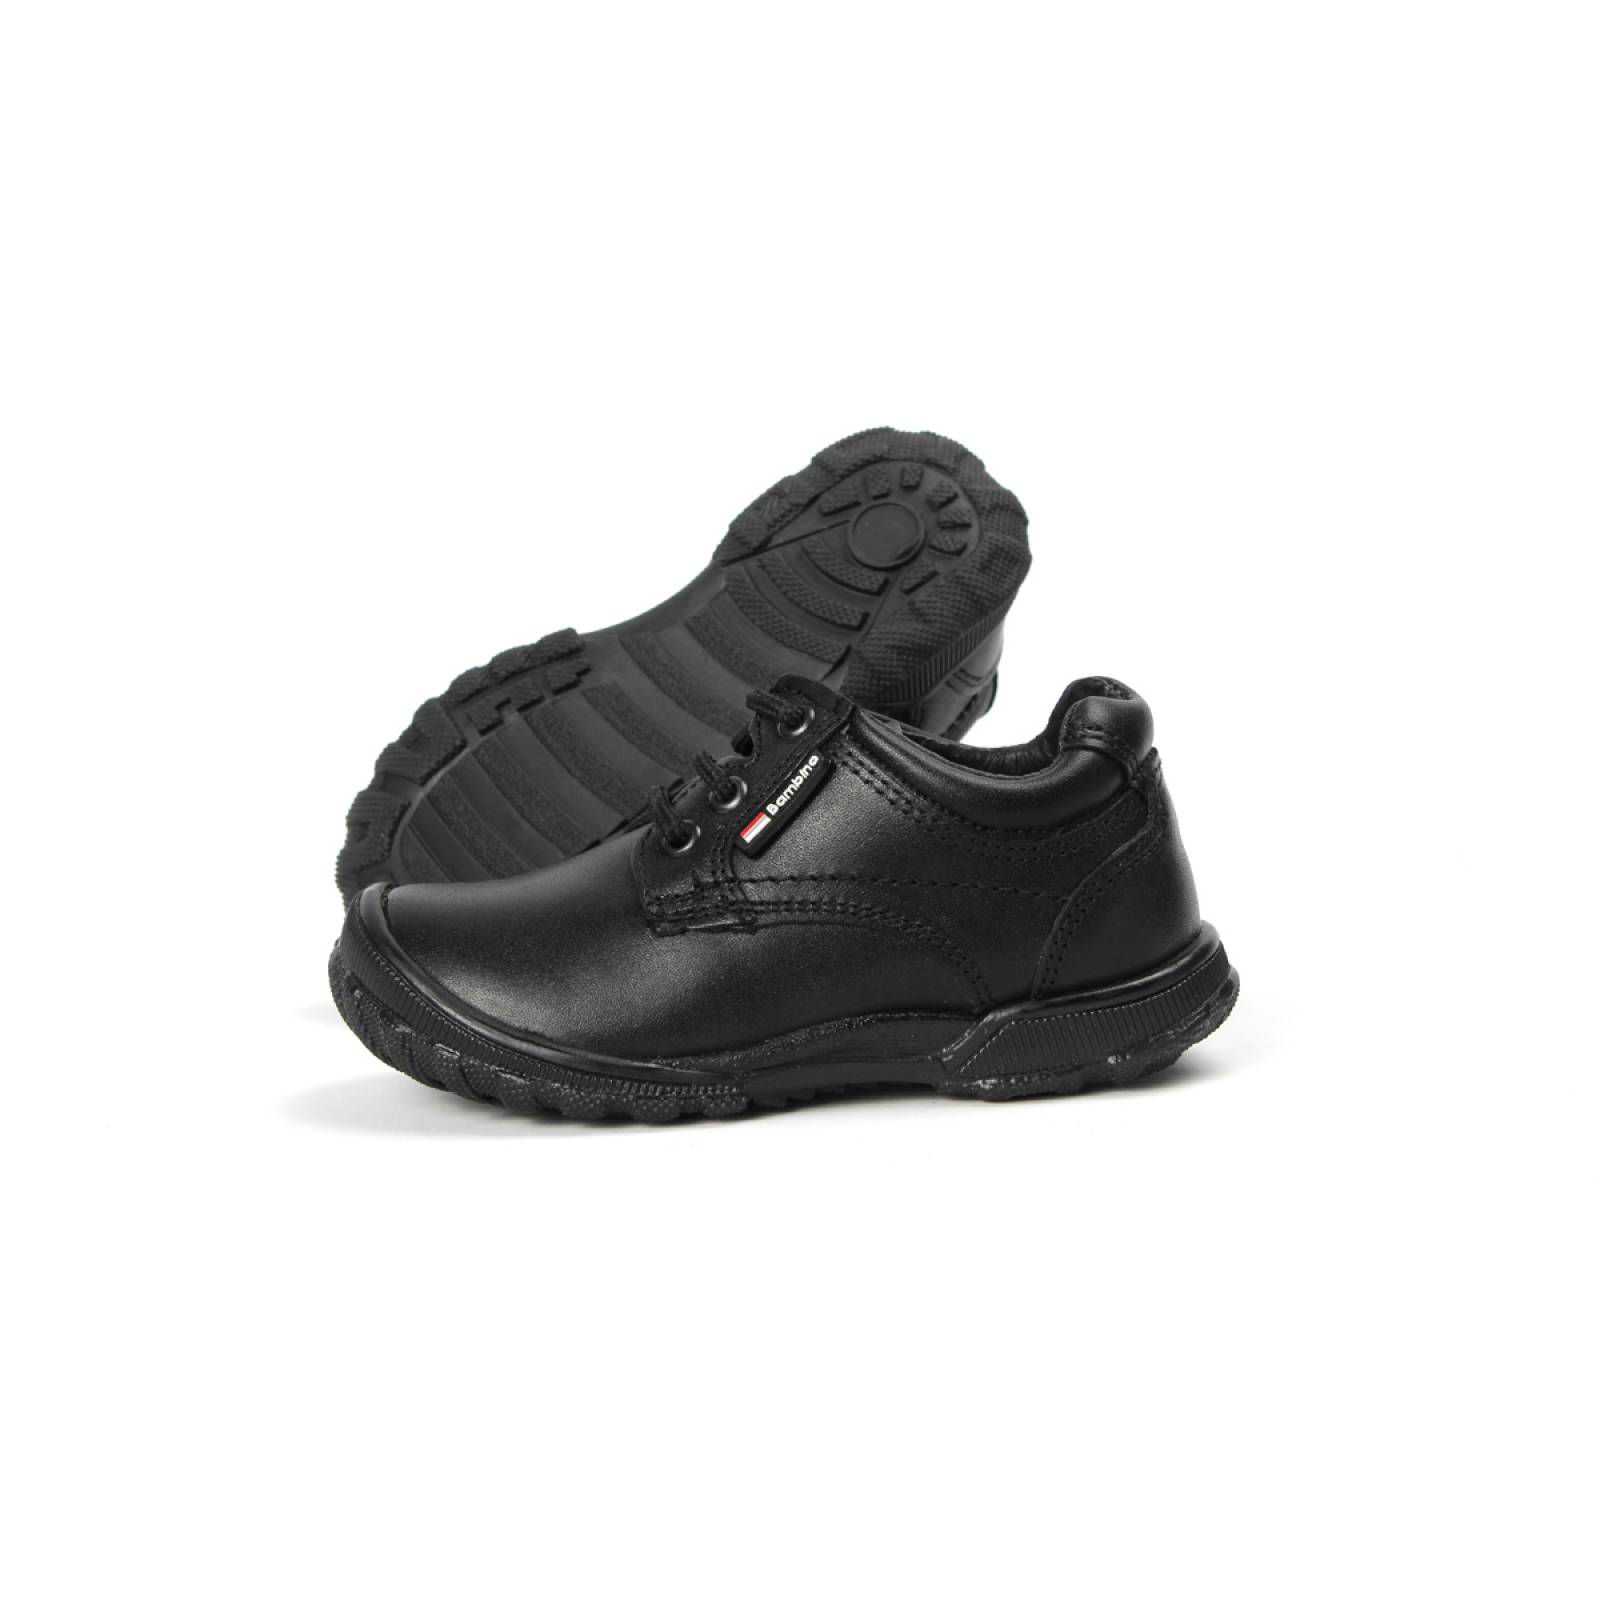 Zapato escolar para niño Bambino A4770-N5 negro